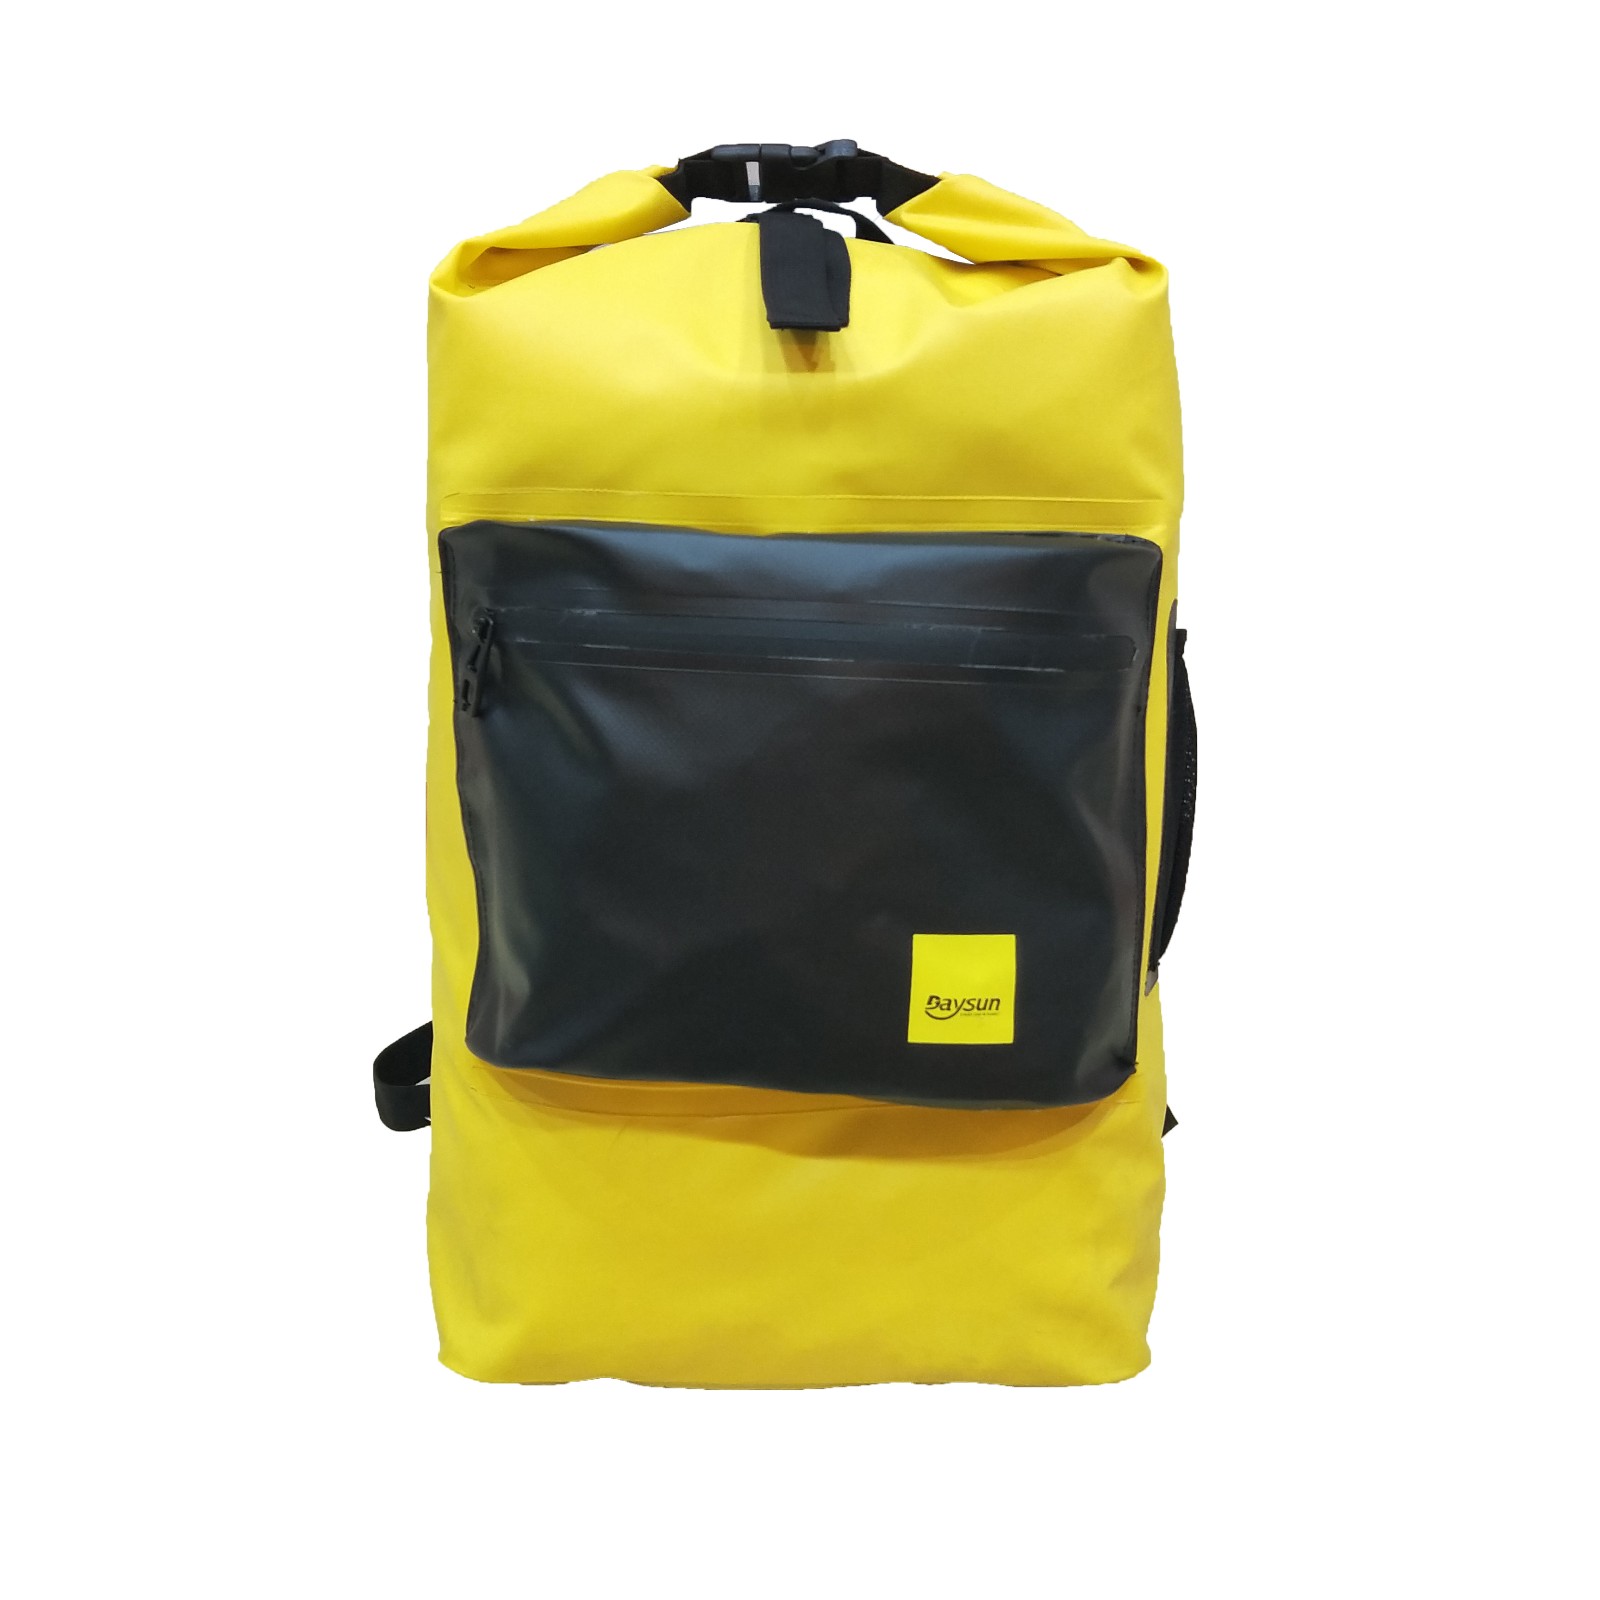 dry bag waterproof backpack